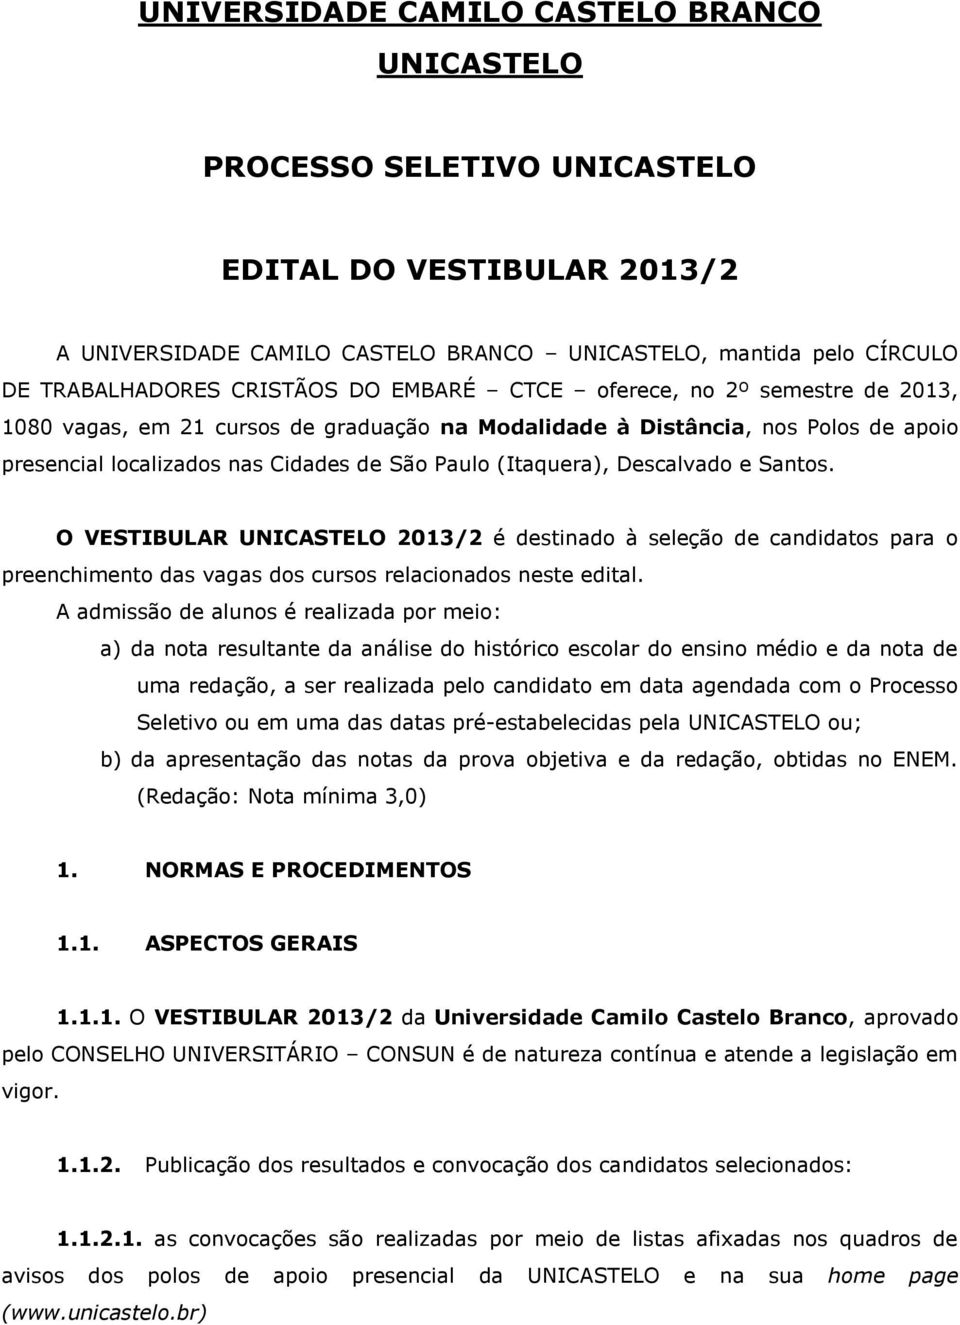 O VESTIBULAR 2013/2 é destinado à seleção de candidatos para o preenchimento das vagas dos cursos relacionados neste edital.